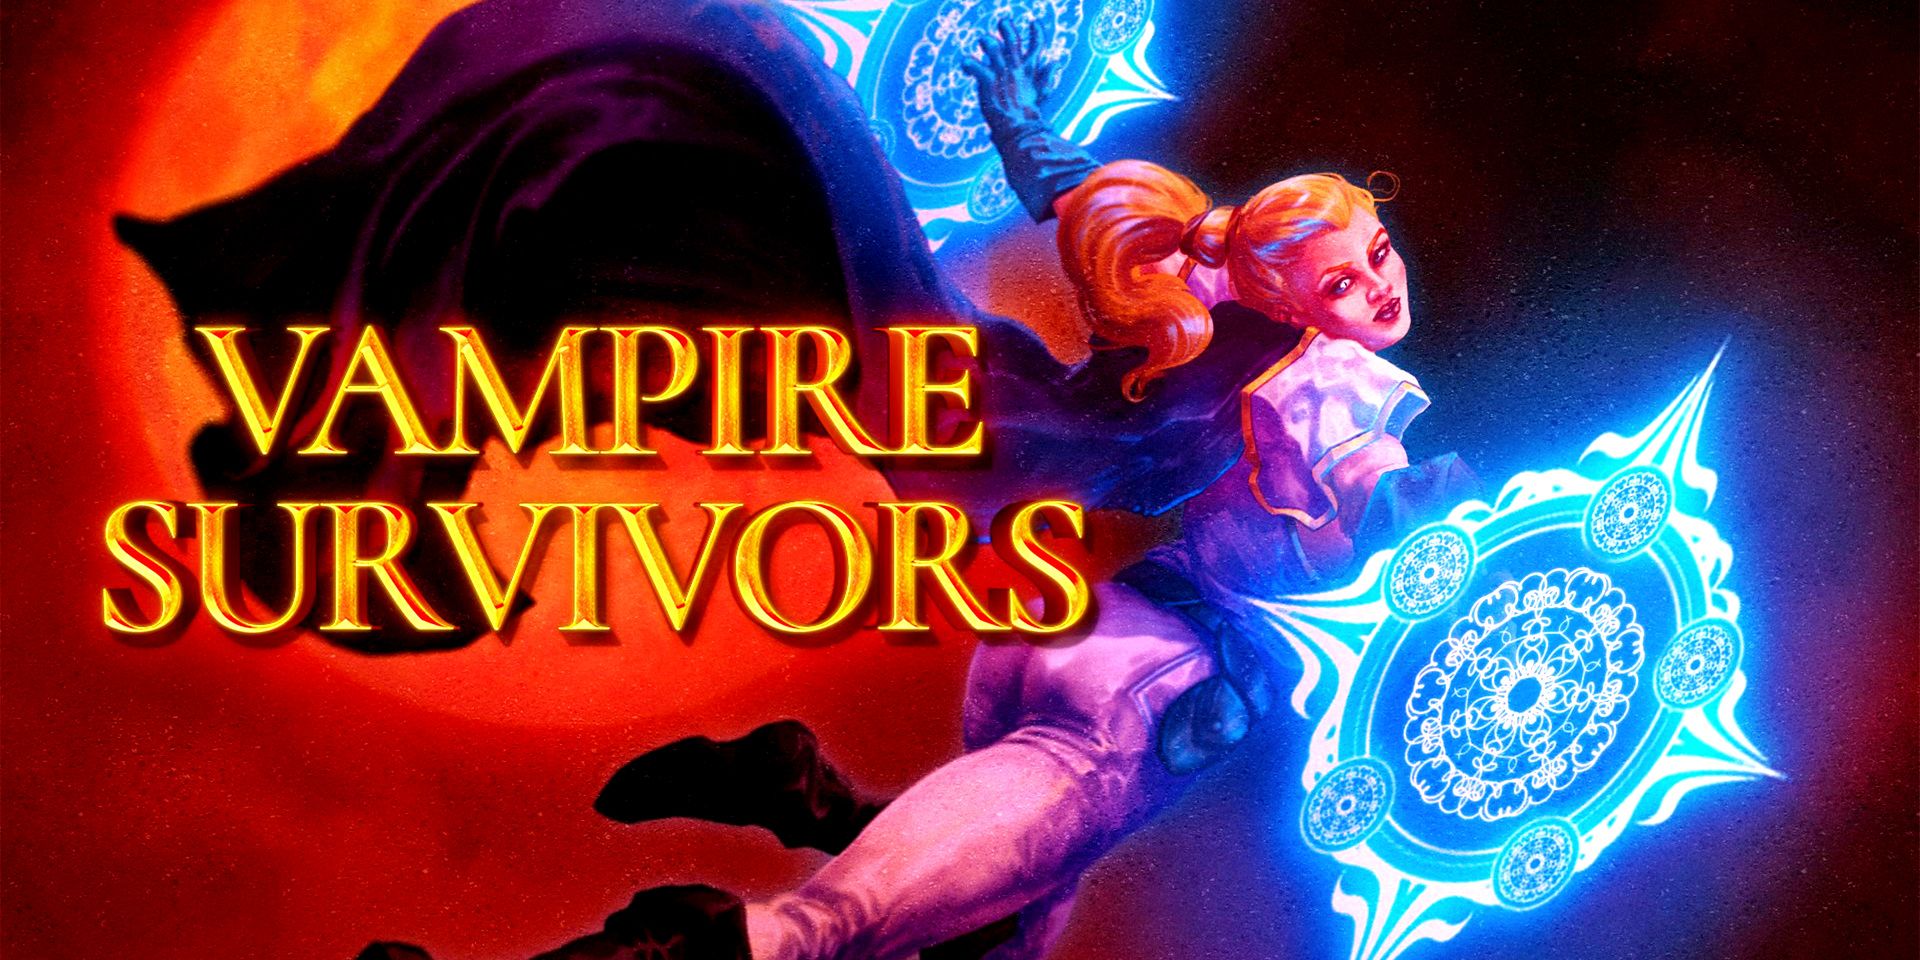 Arte do título de Vampire Survivors, mostrando o nome do jogo e um personagem com dois discos mágicos azuis em suas mãos.